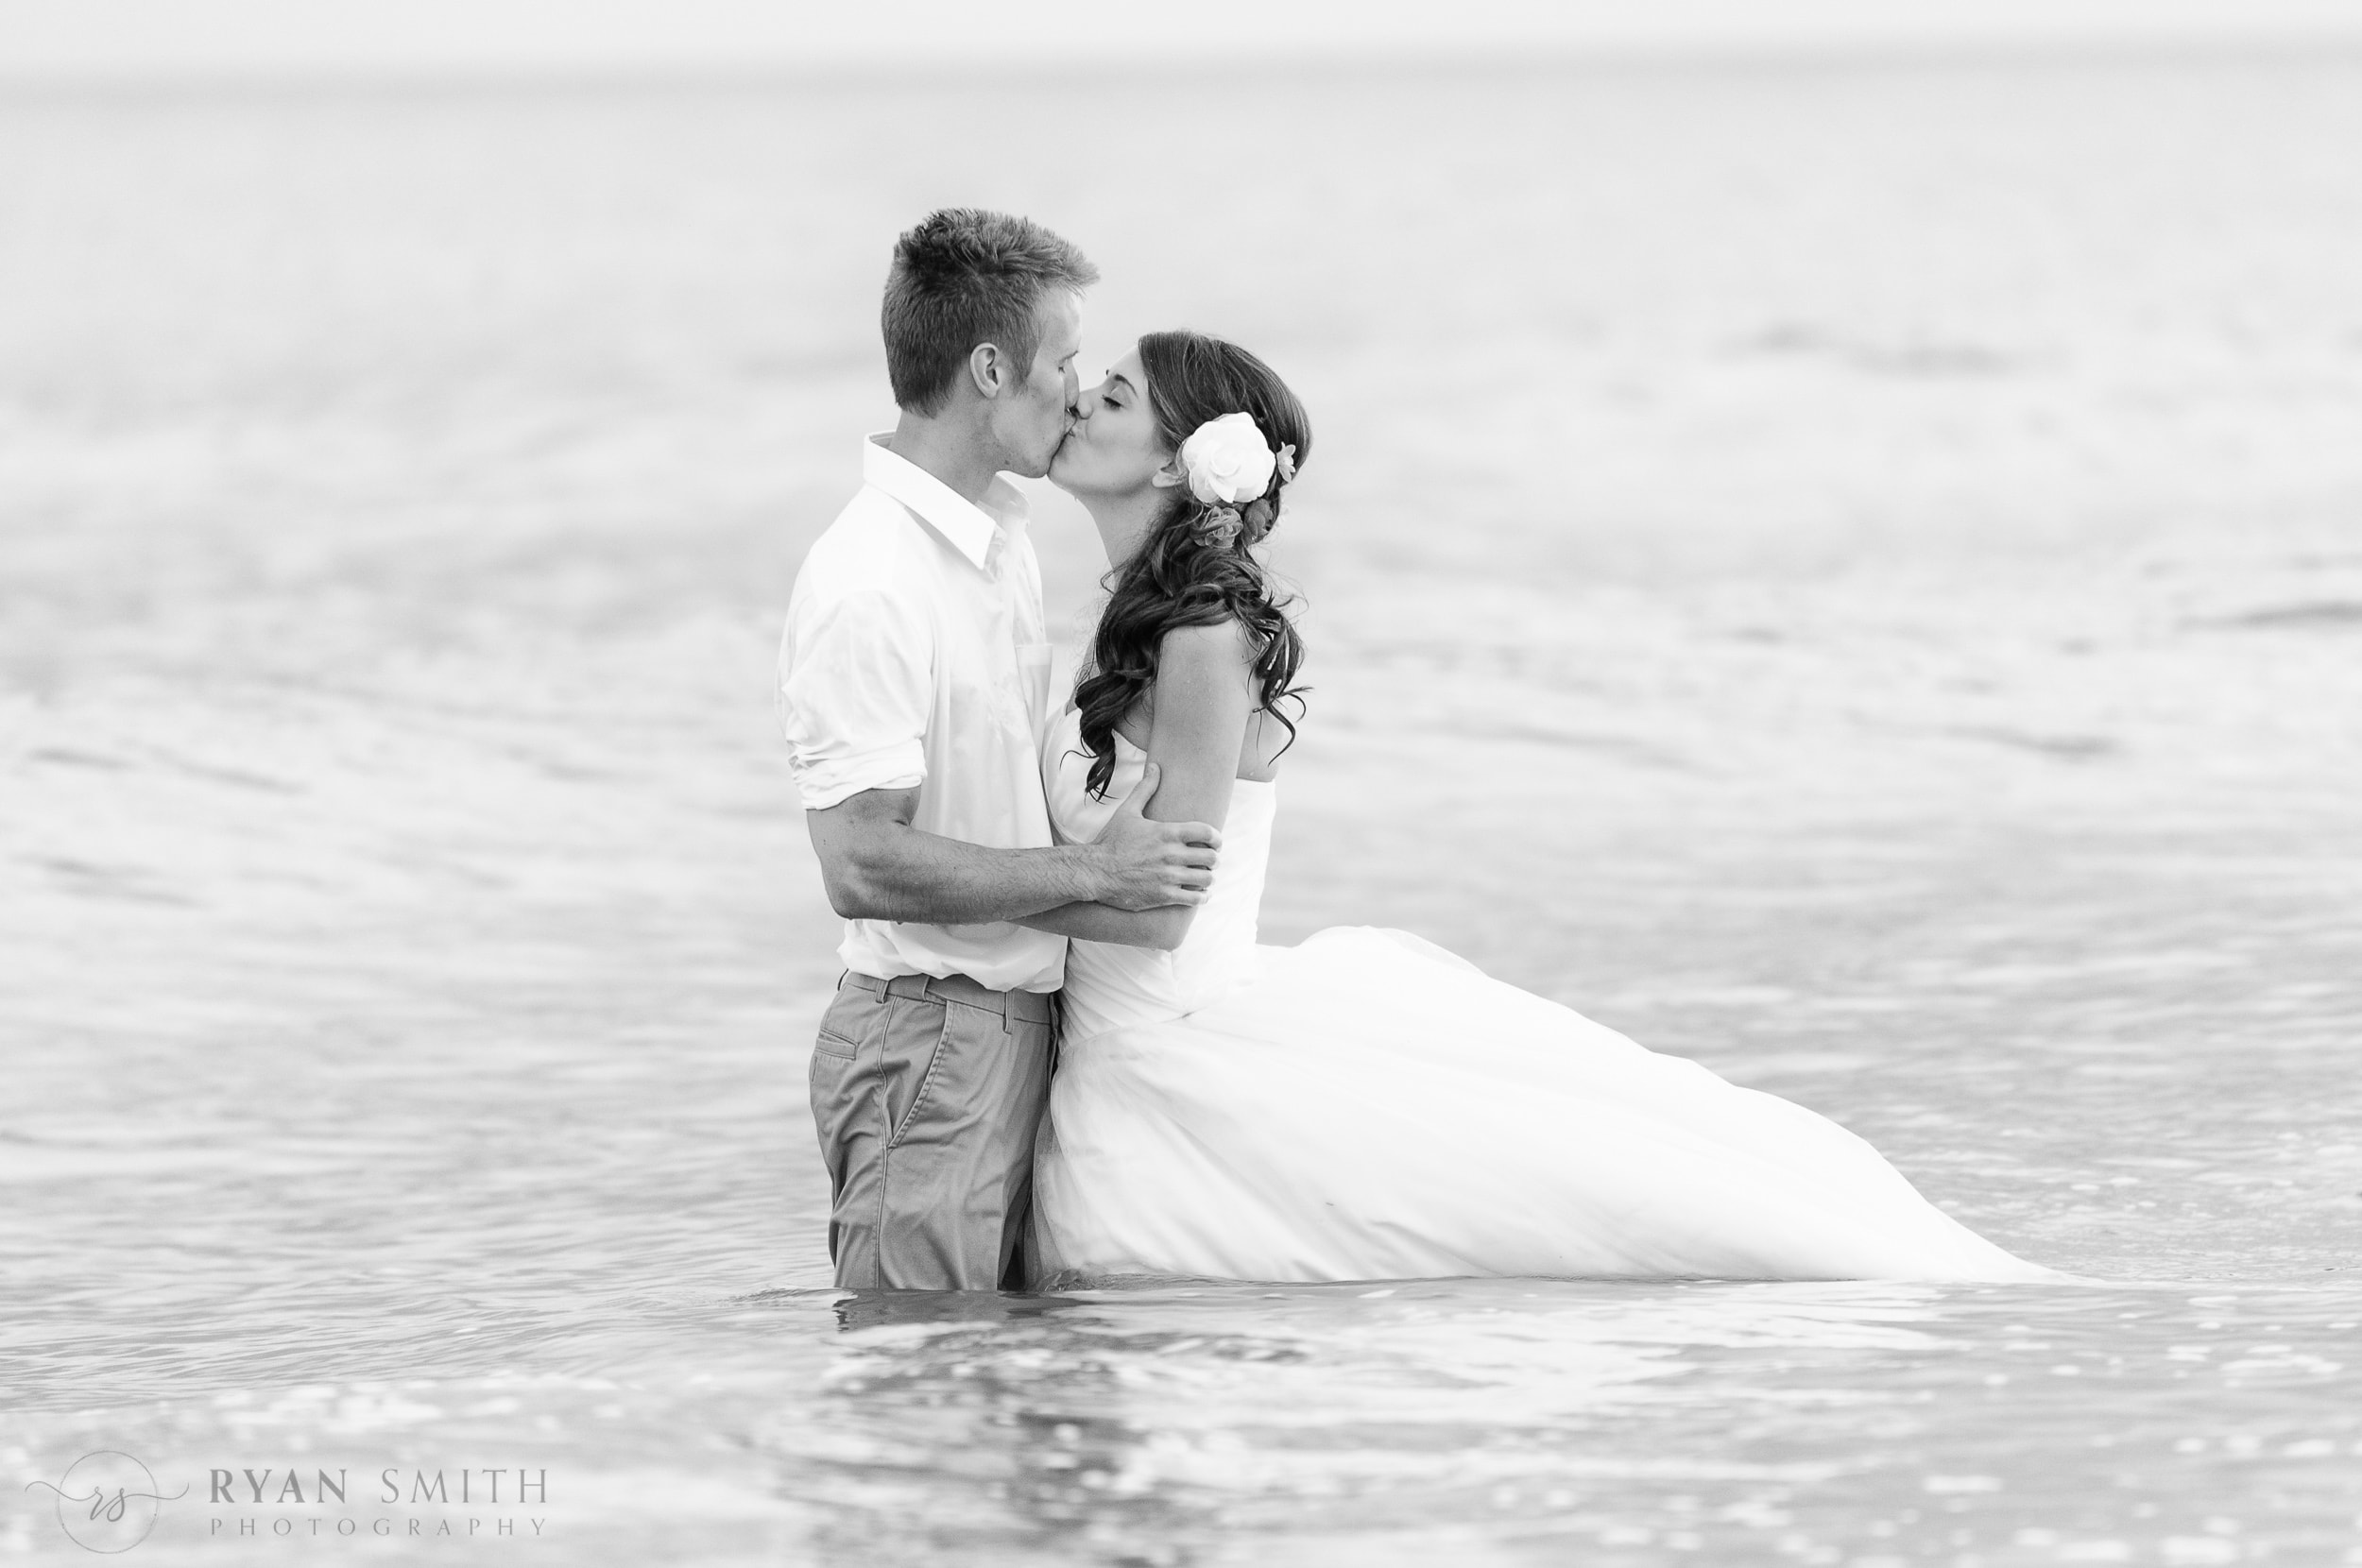 Bride and groom deep in ocean together - Ocean Isle